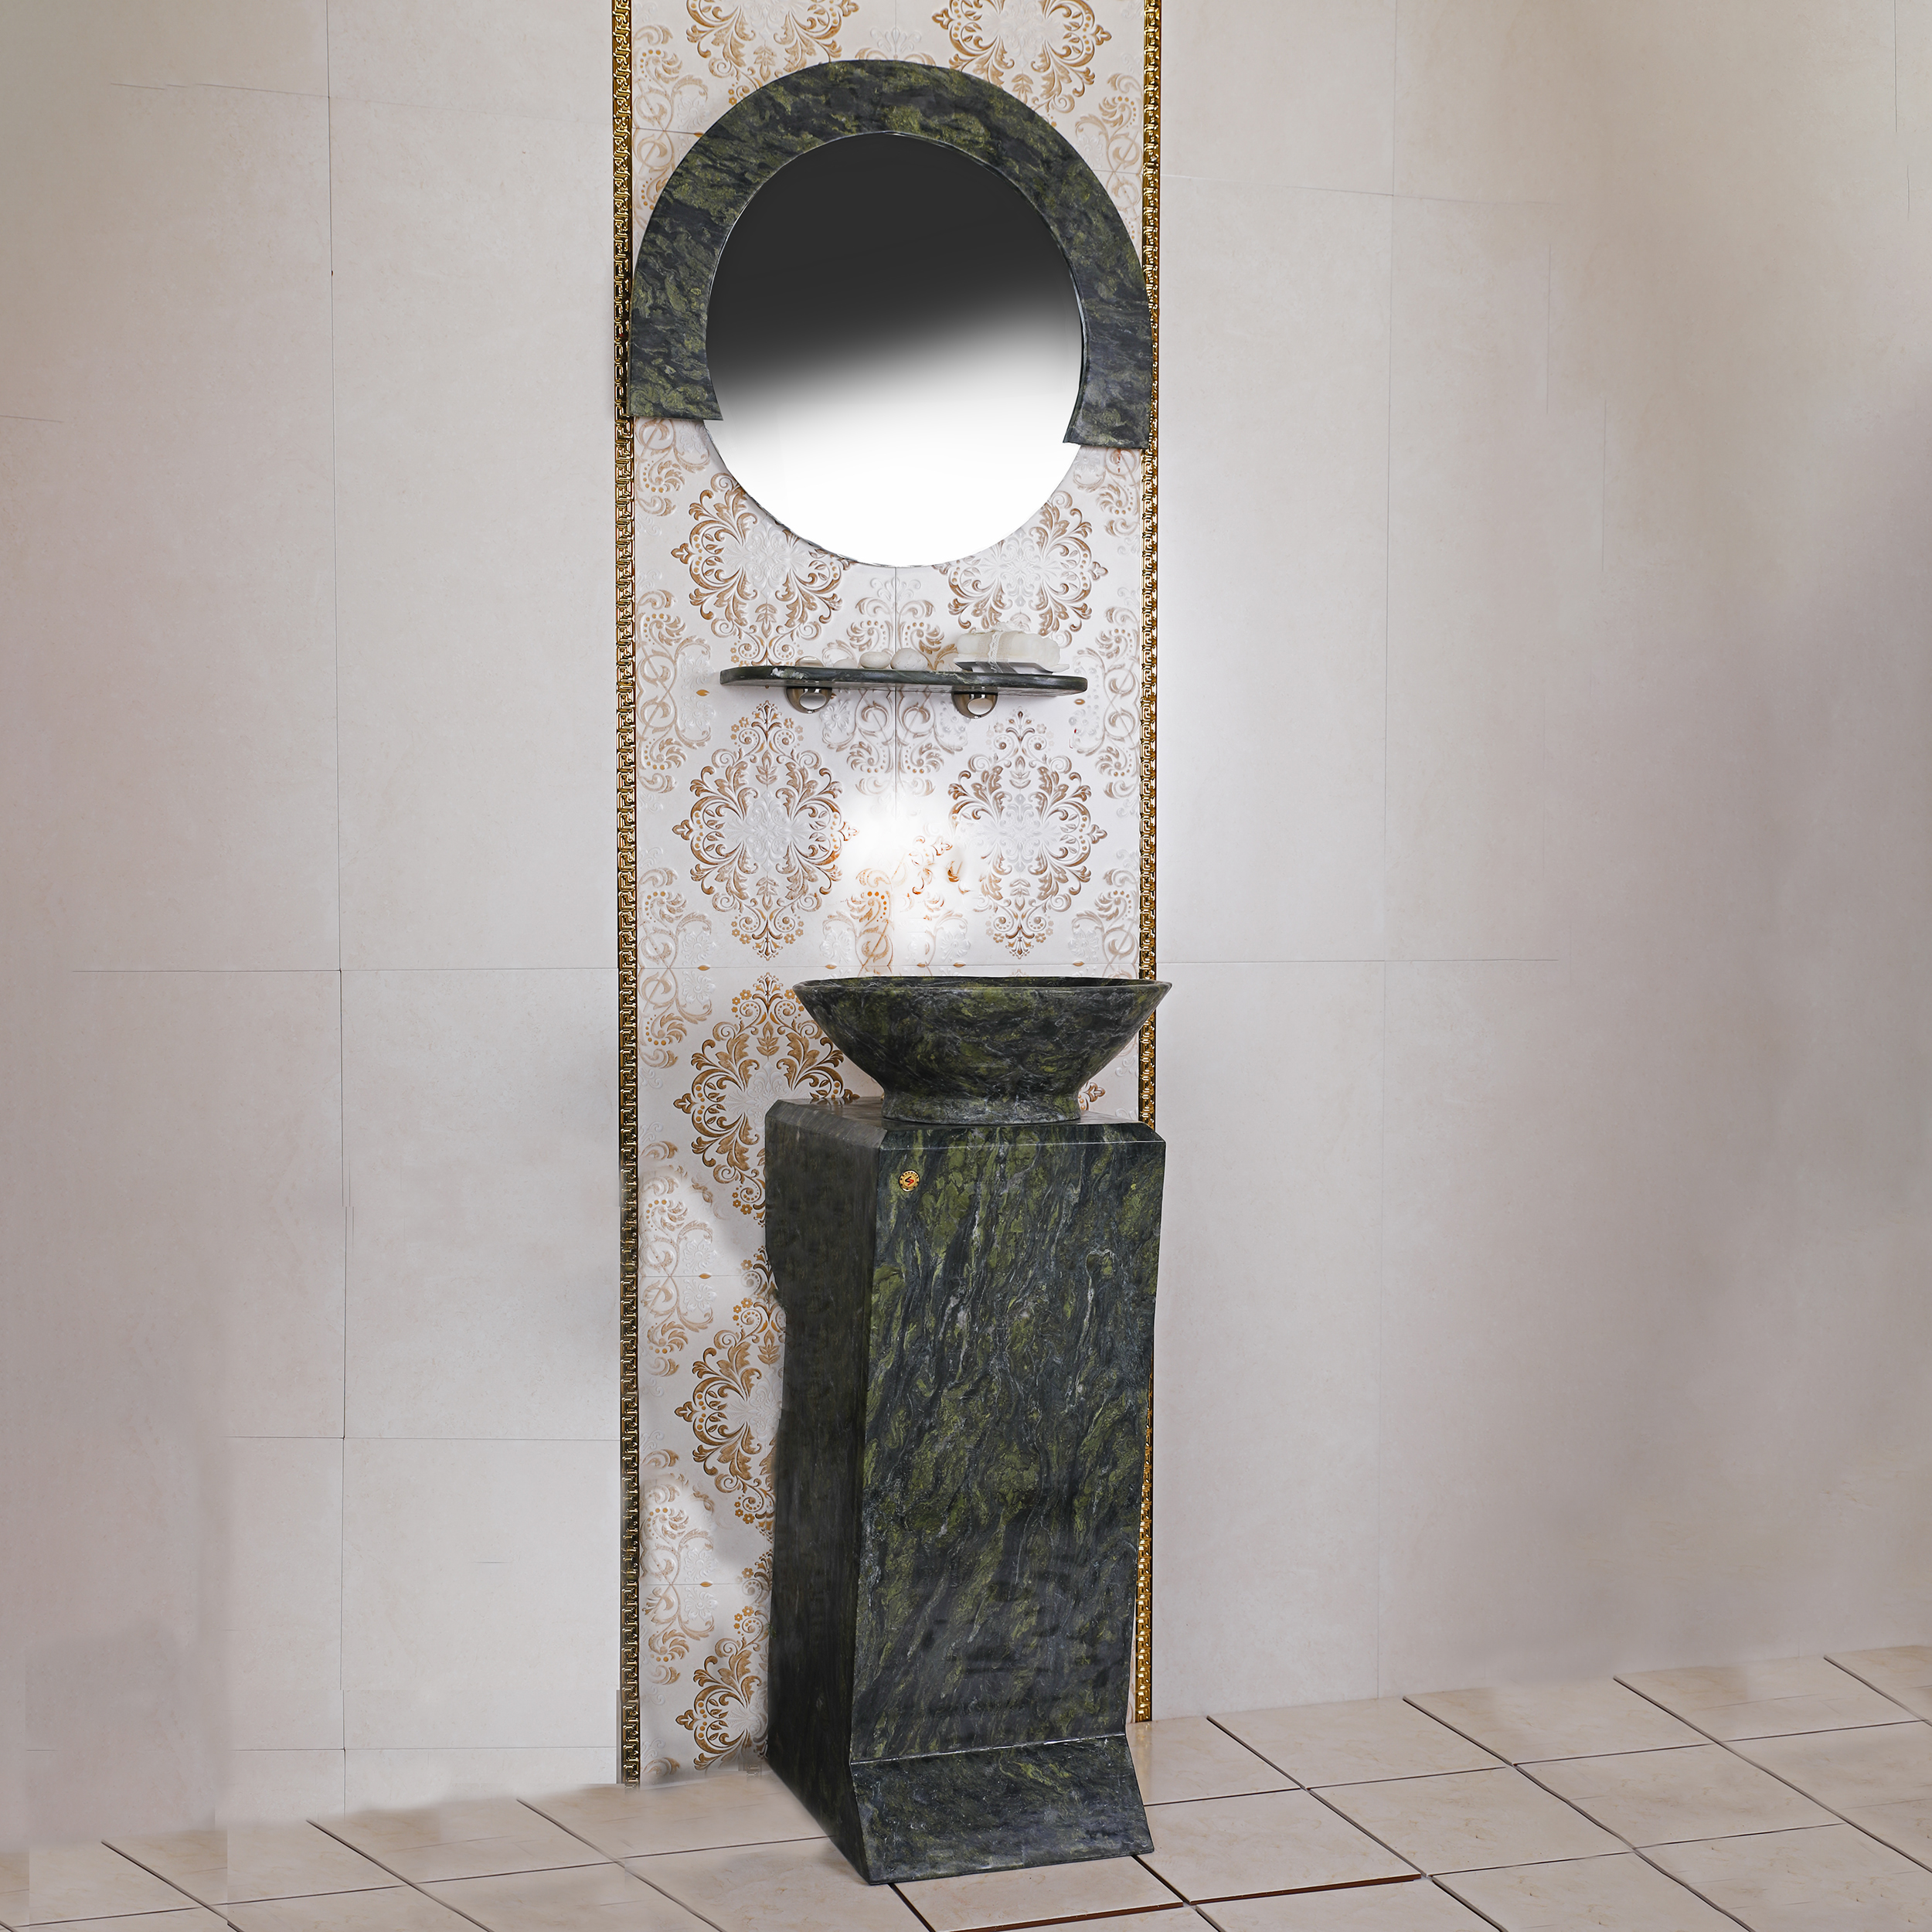 روشویی مدل آرمیتا پیکاسو به همراه آینه و طبقه دیواری